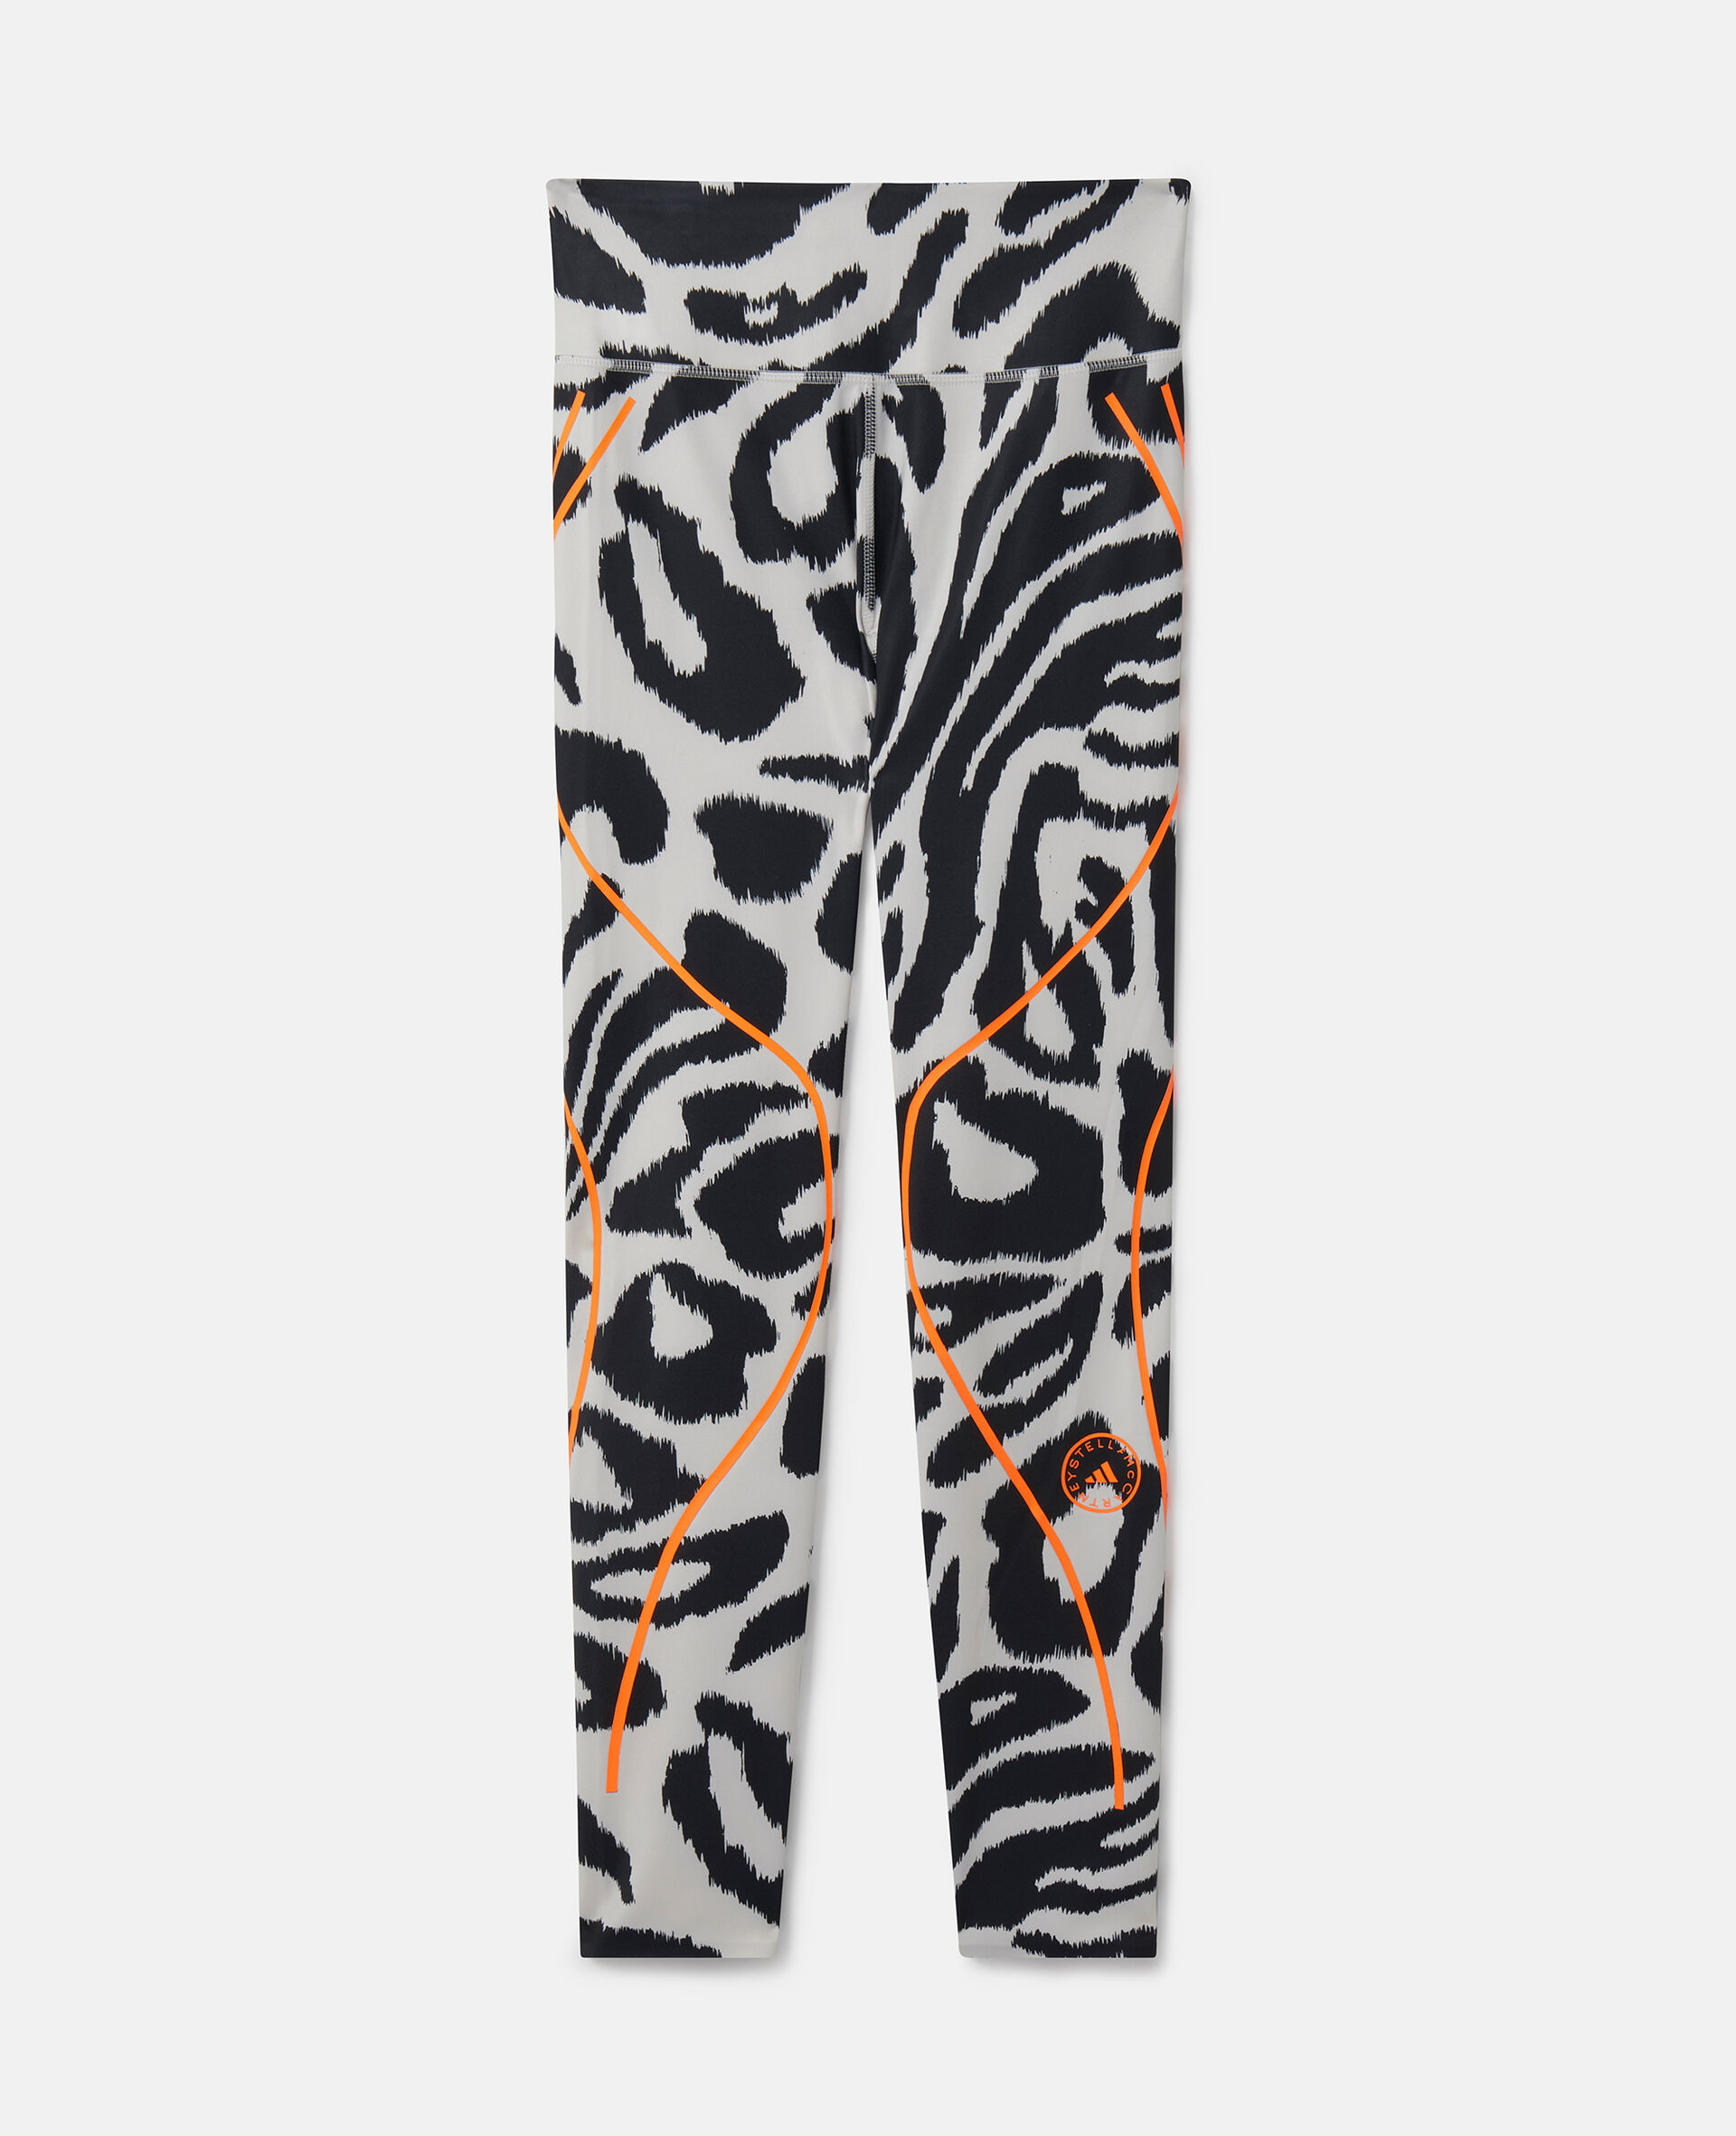 TruePace Lauf-Leggings mit Leoparden-Print-Bunt-medium